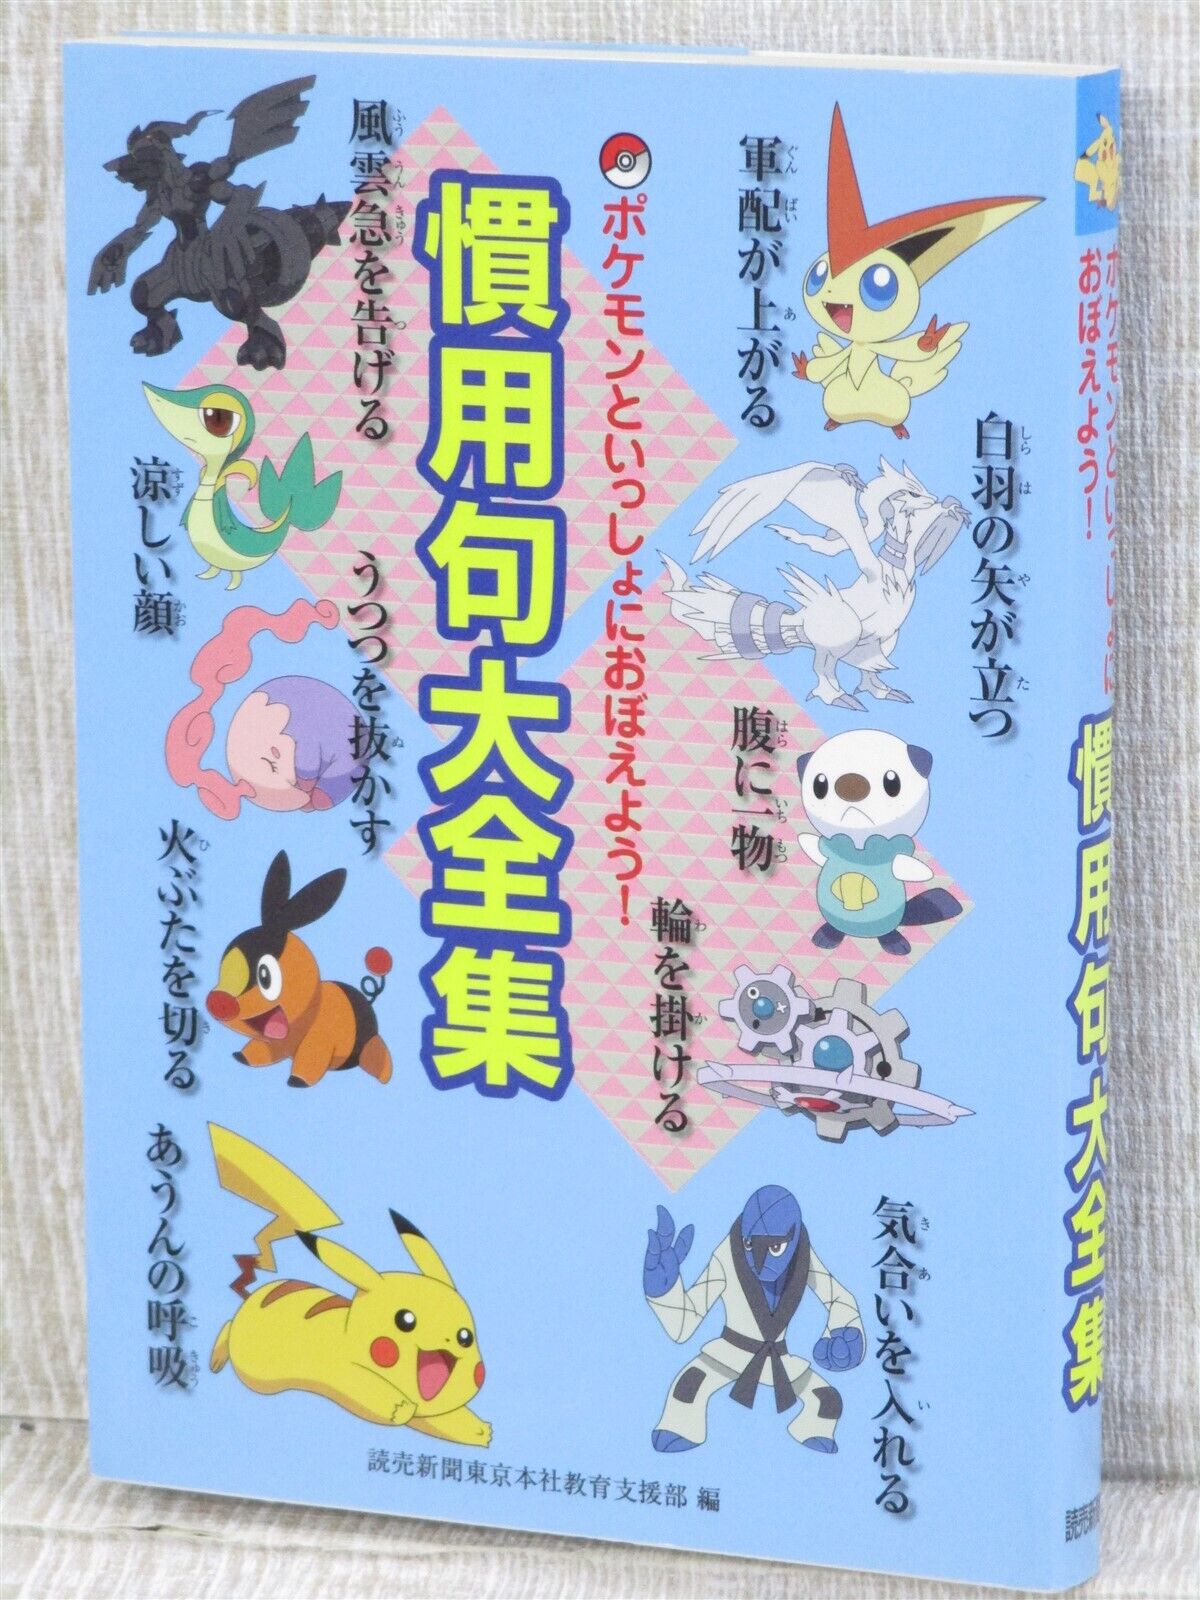 POKEMON JAPANESE IDIOM DAIZENSHU Art Language Text Character Fan Book 2011